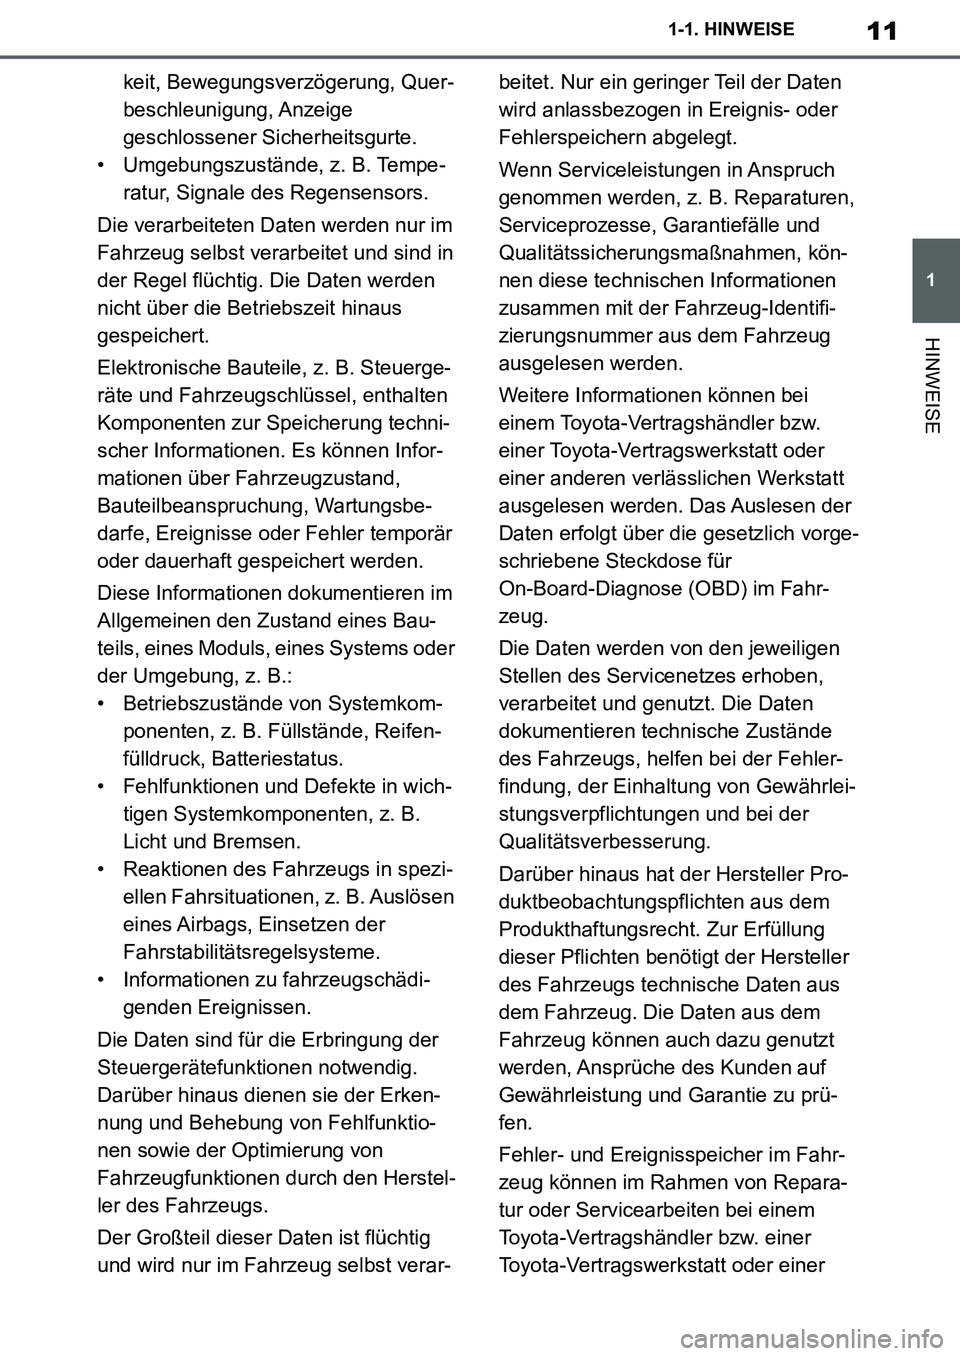 TOYOTA SUPRA 2020  Betriebsanleitungen (in German) 11
1
Supra Owners Manual_EM
1-1. HINWEISE
HINWEISE
keit, Bewegungsverzögerung, Quer-
beschleunigung, Anzeige 
geschlossener Sicherheitsgurte.
• Umgebungszustände, z. B. Tempe-
ratur, Signale des 